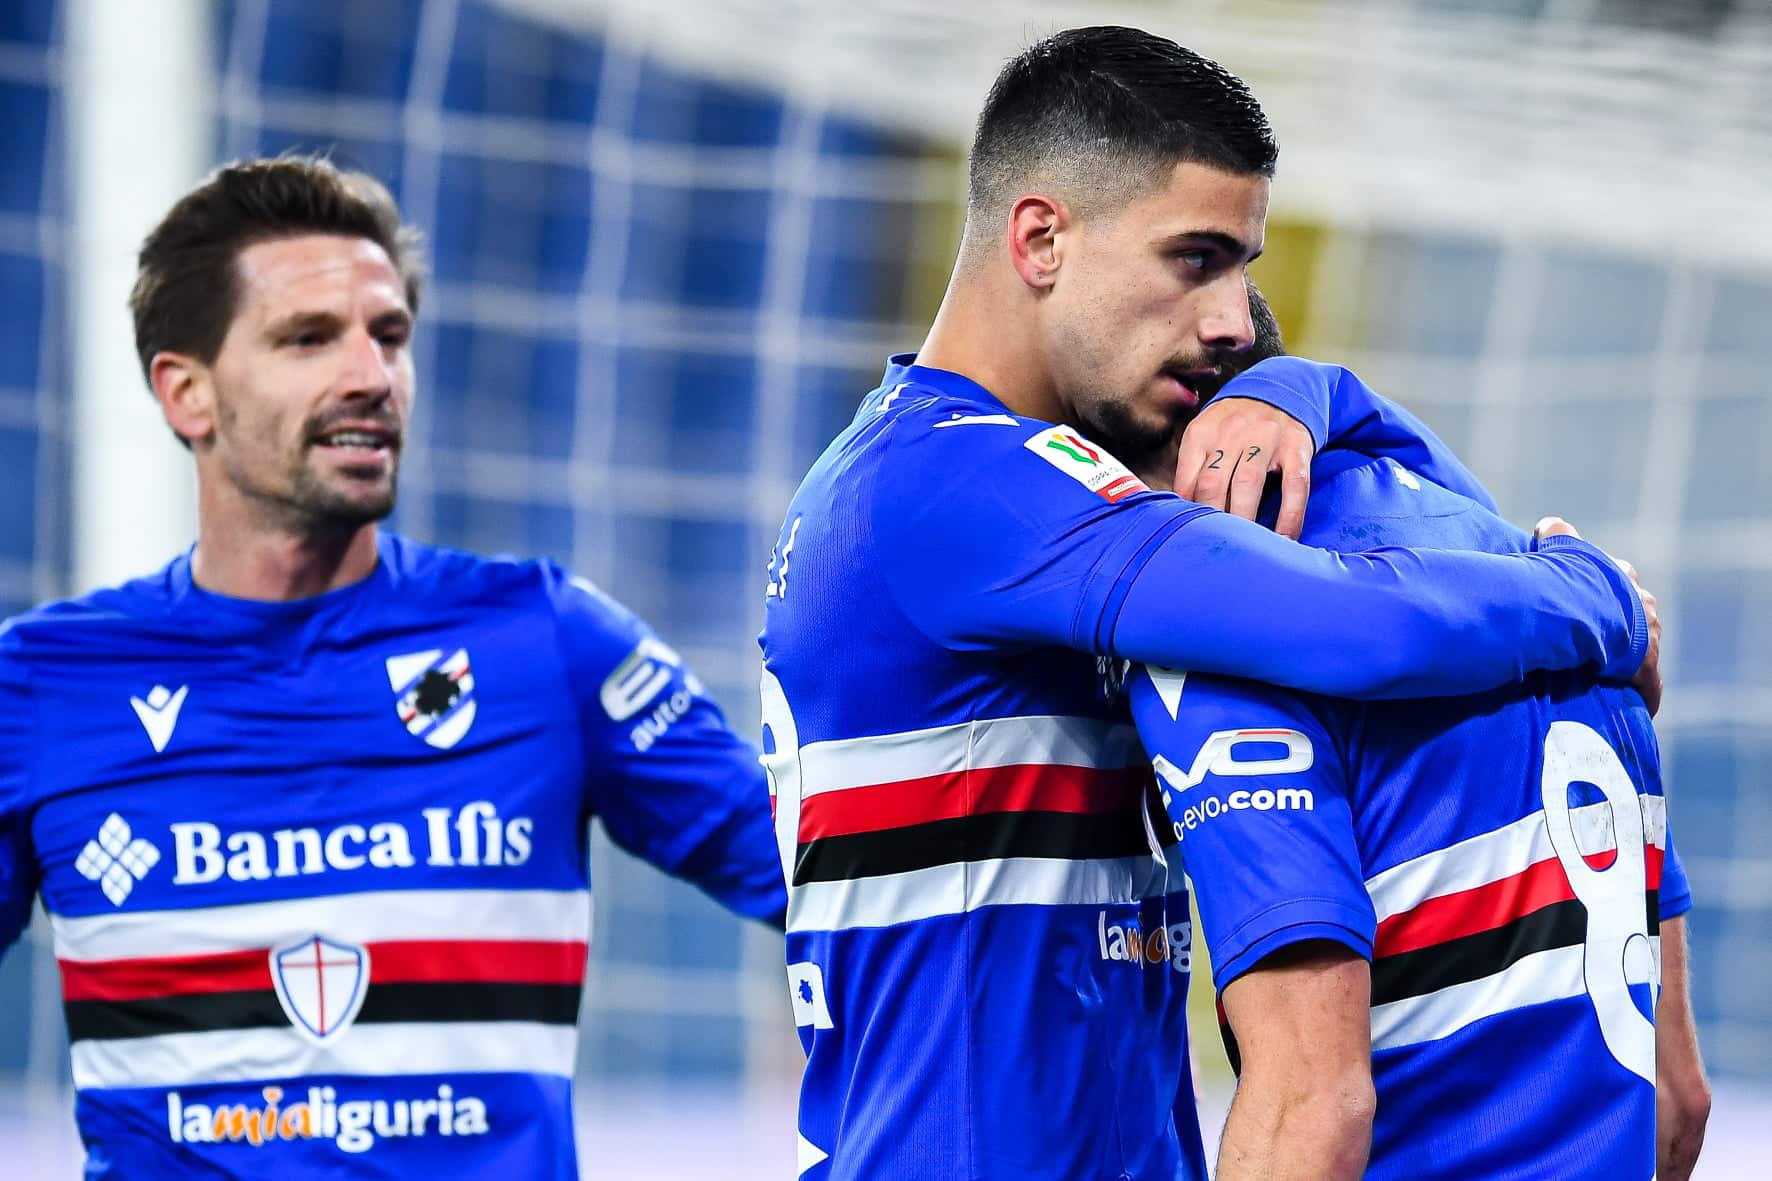 Calciomercato Sampdoria, clamoroso ritorno in attacco? Il grande nome